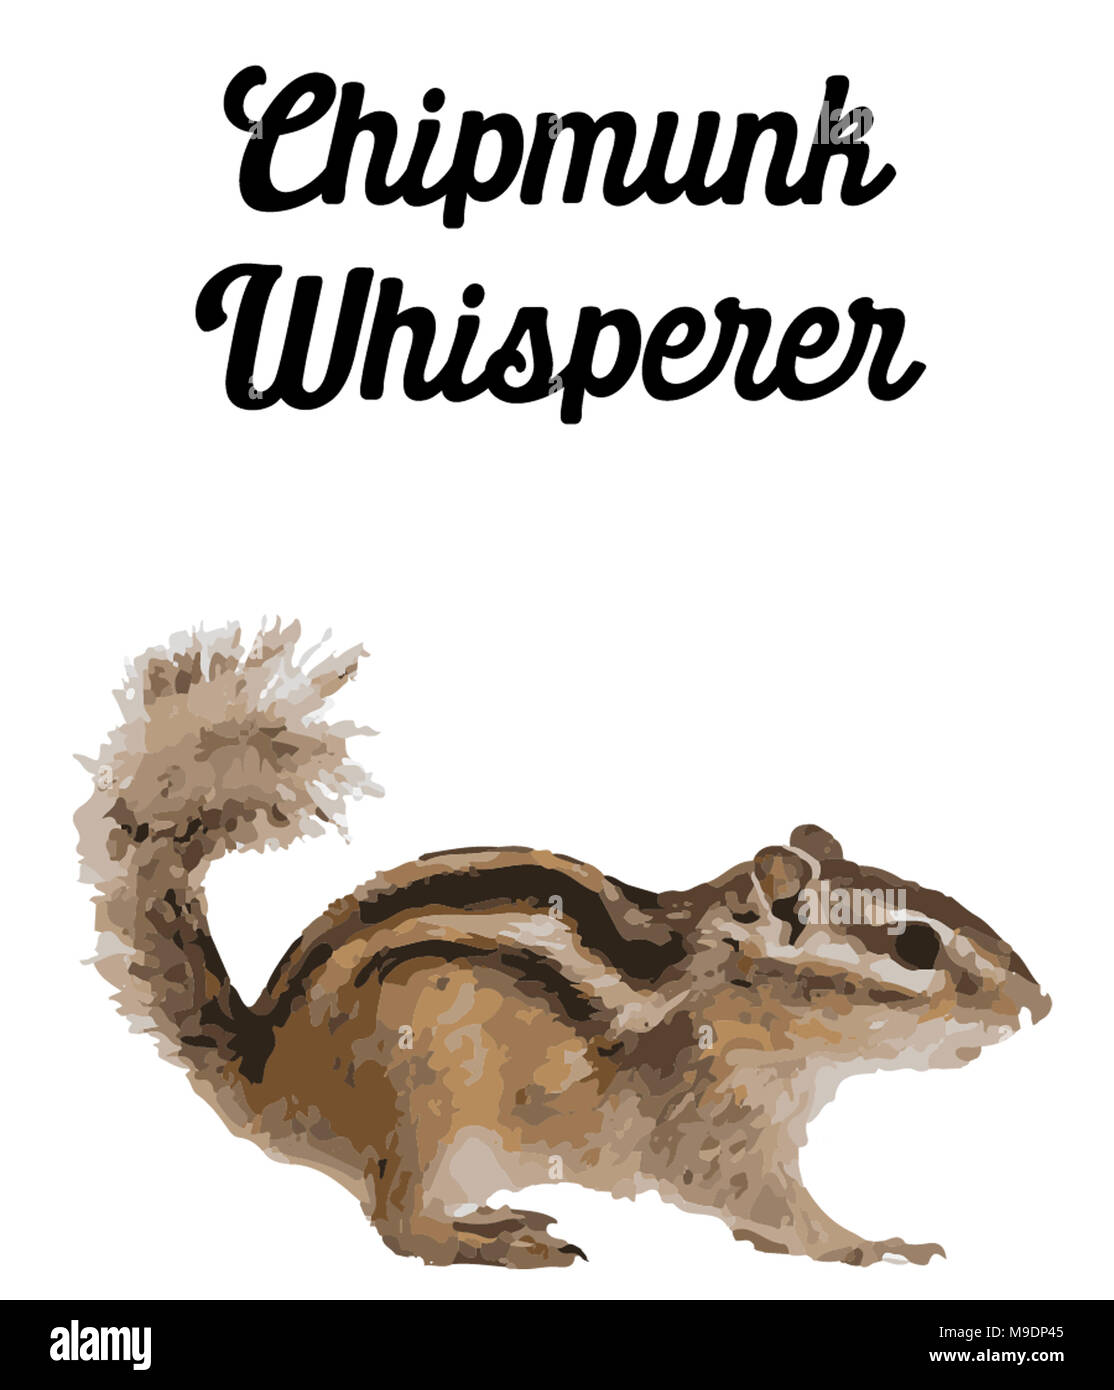 Chipmunk Whisperer Stockfoto